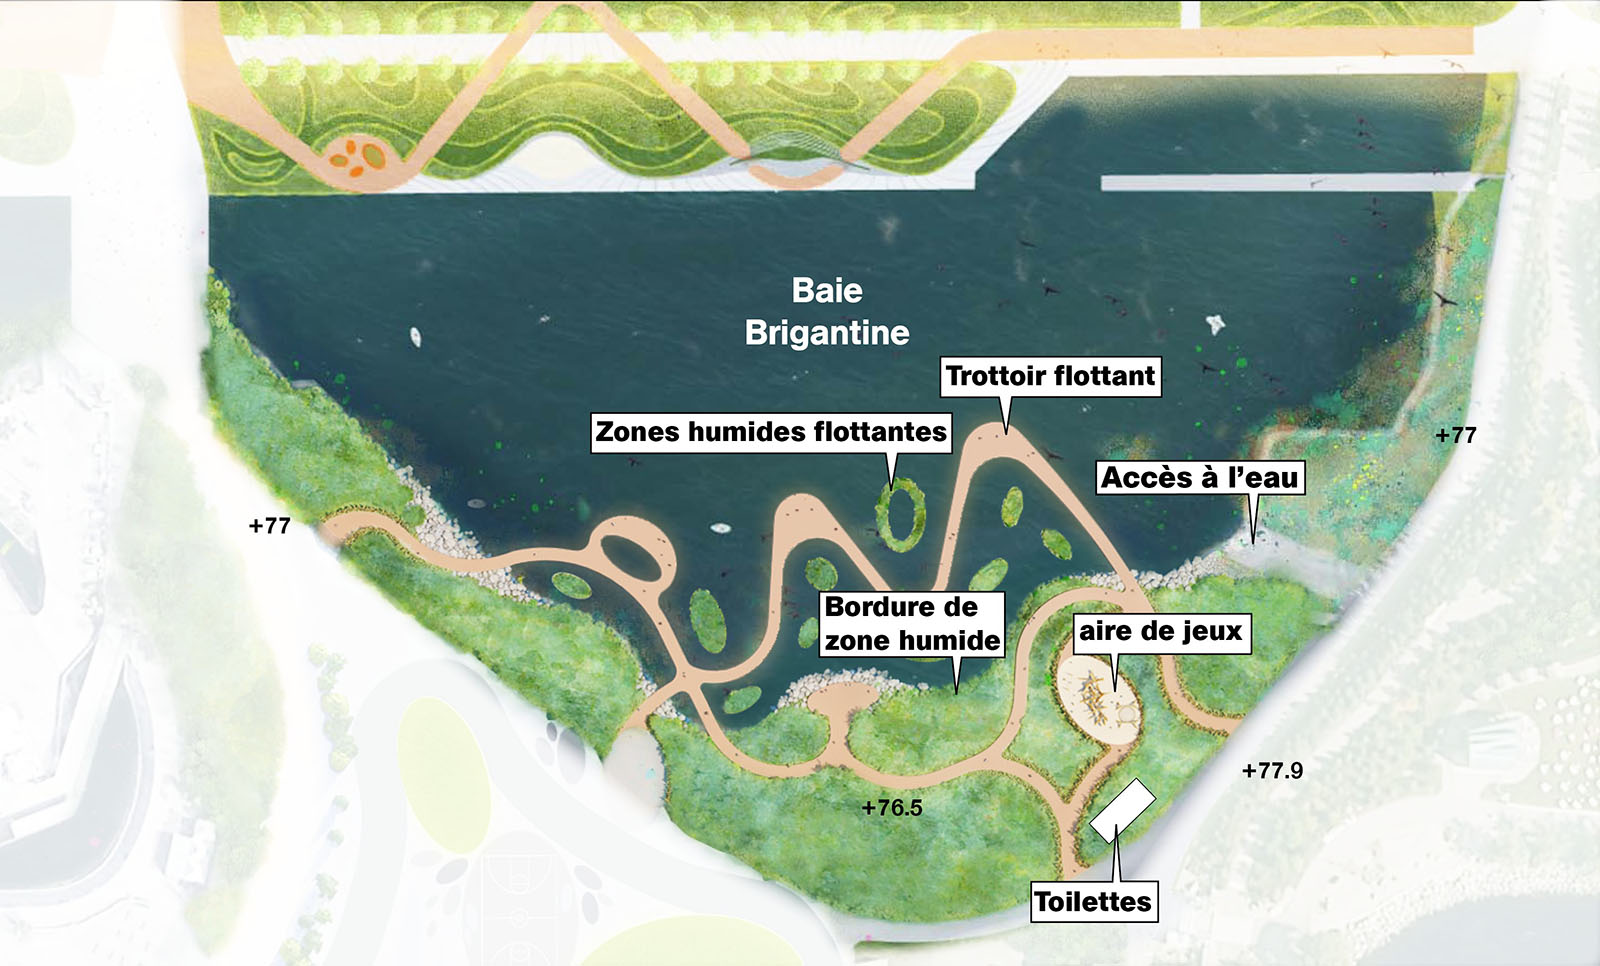 Image rendue de Brigantine Cove montrant des trottoirs de bois flottants et des zones humides flottantes sur l’eau. Une bordure de zone humide est représentée et l’accès à l’eau se fait à l’est, avec une aire de jeux et des toilettes à l’intérieur des terres. 